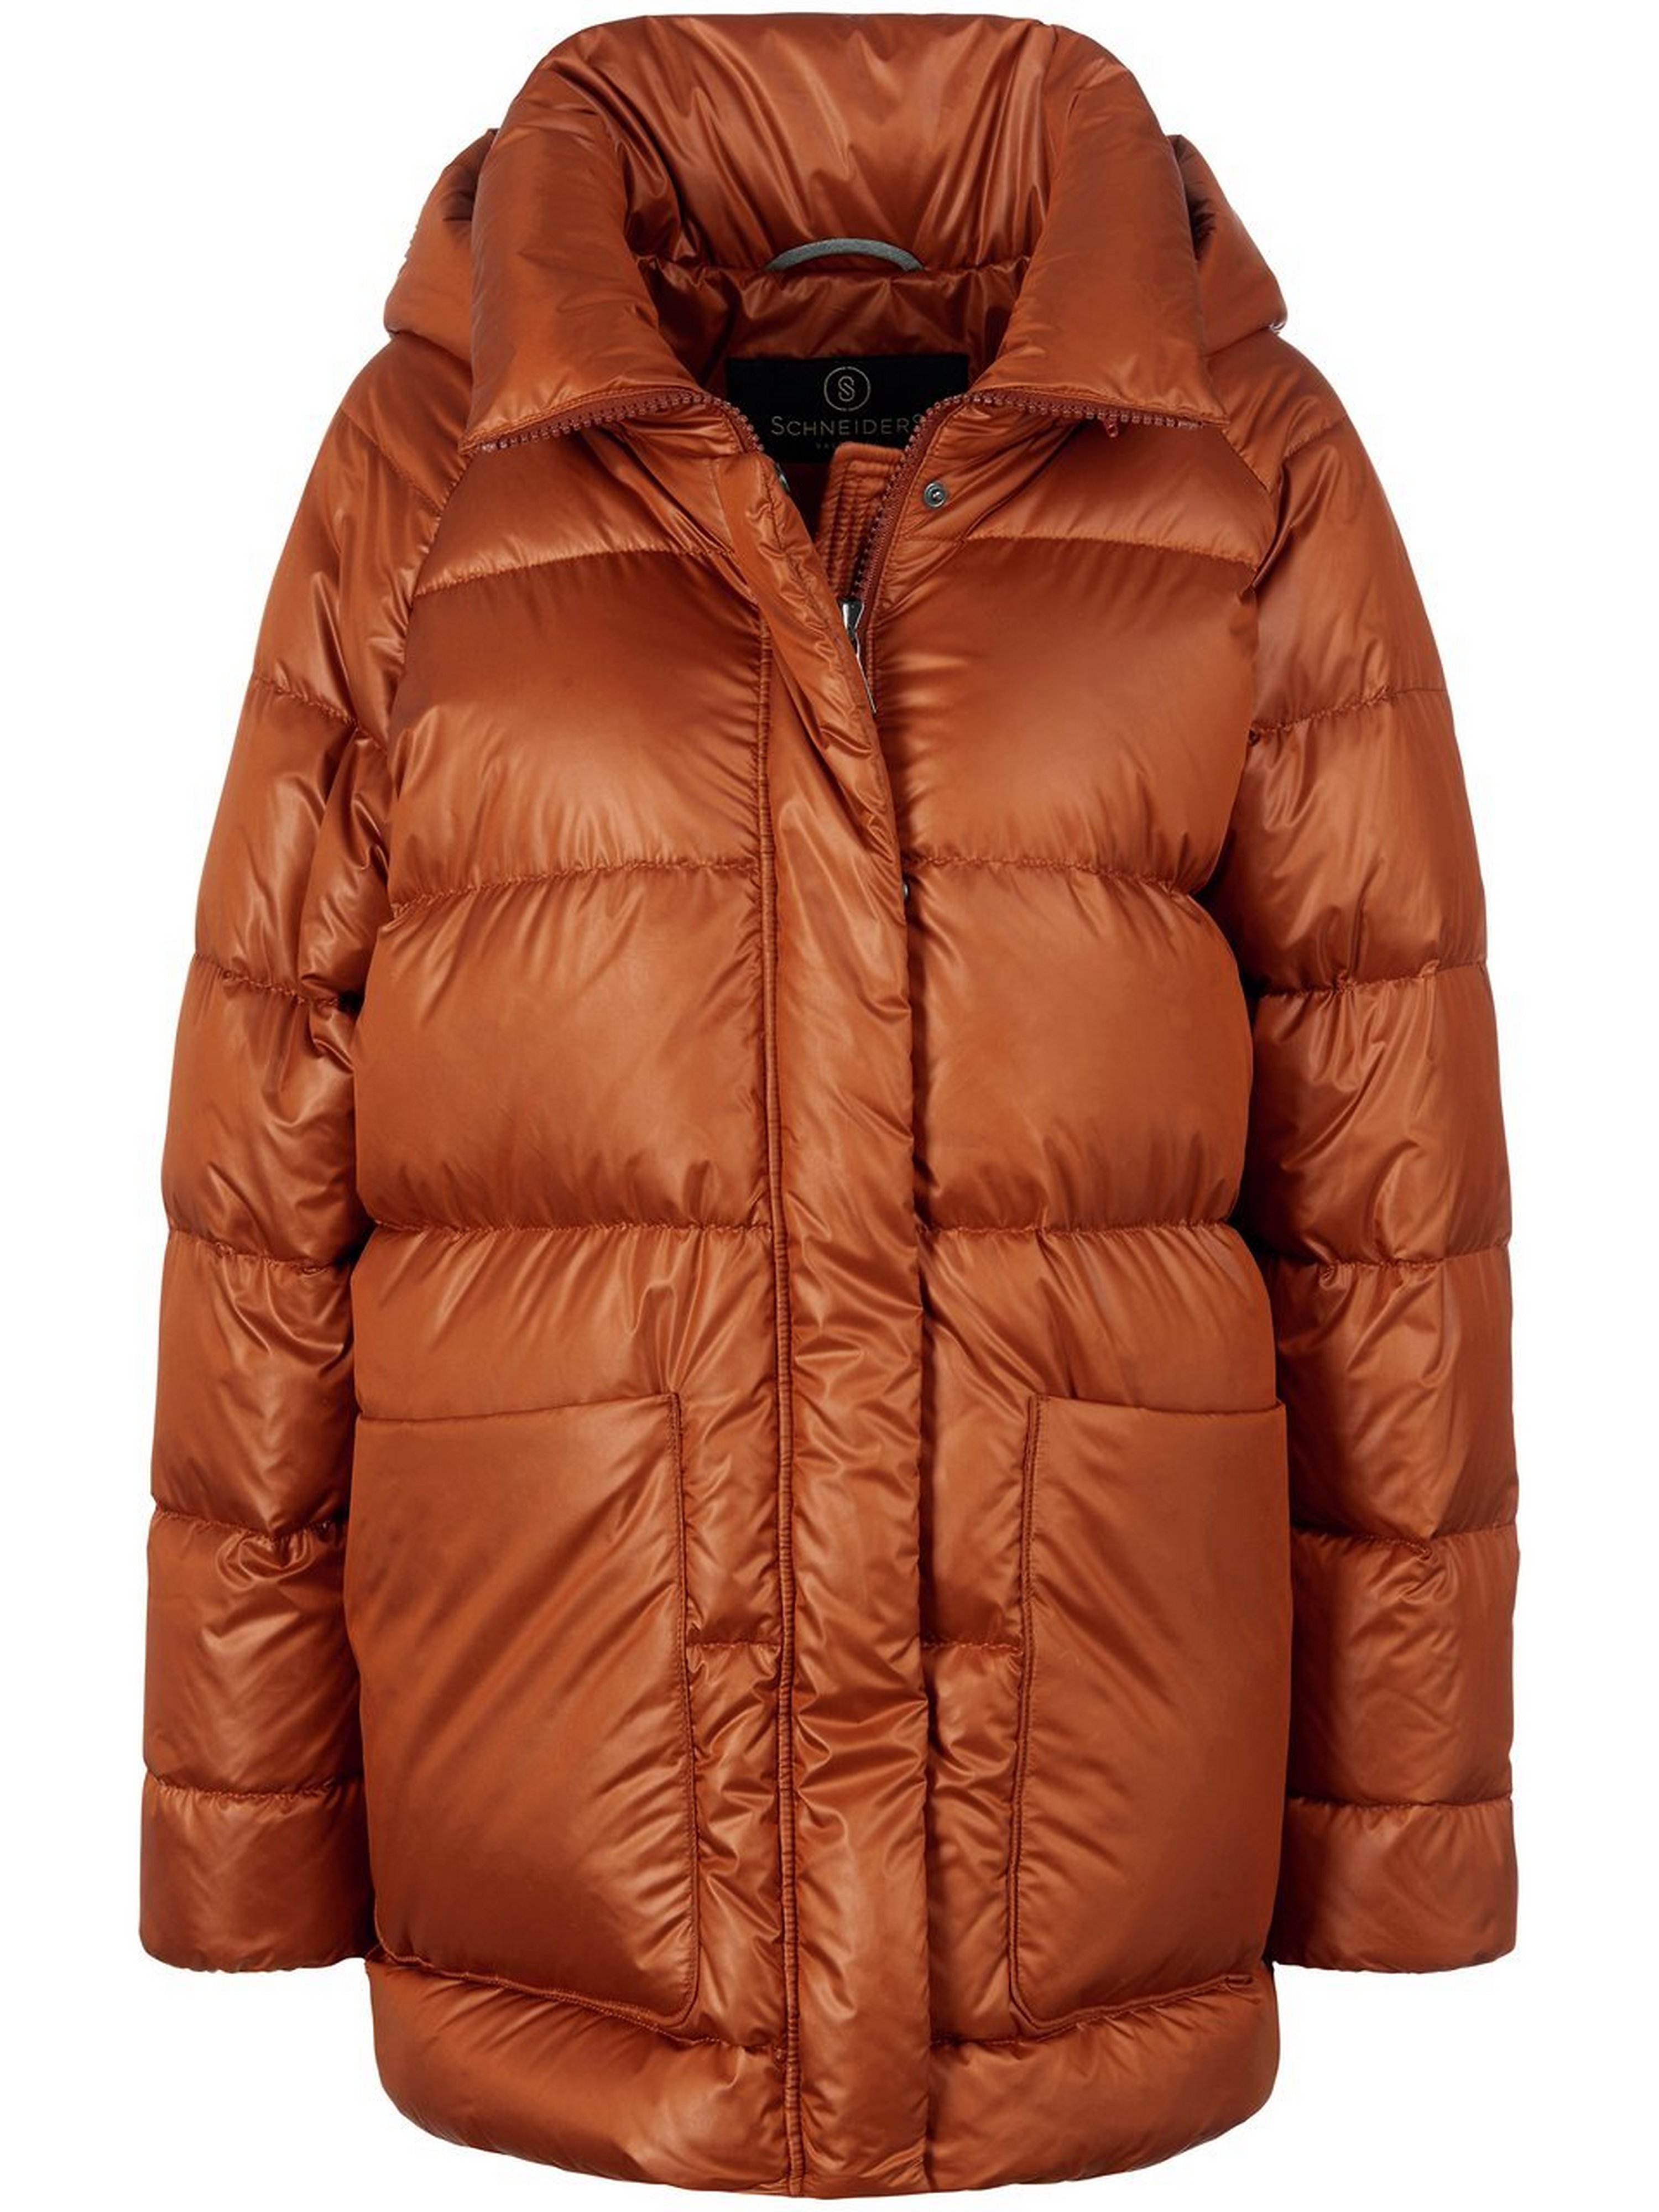 La veste doudoune avec capuche amovible  Schneiders Salzburg orange taille 48